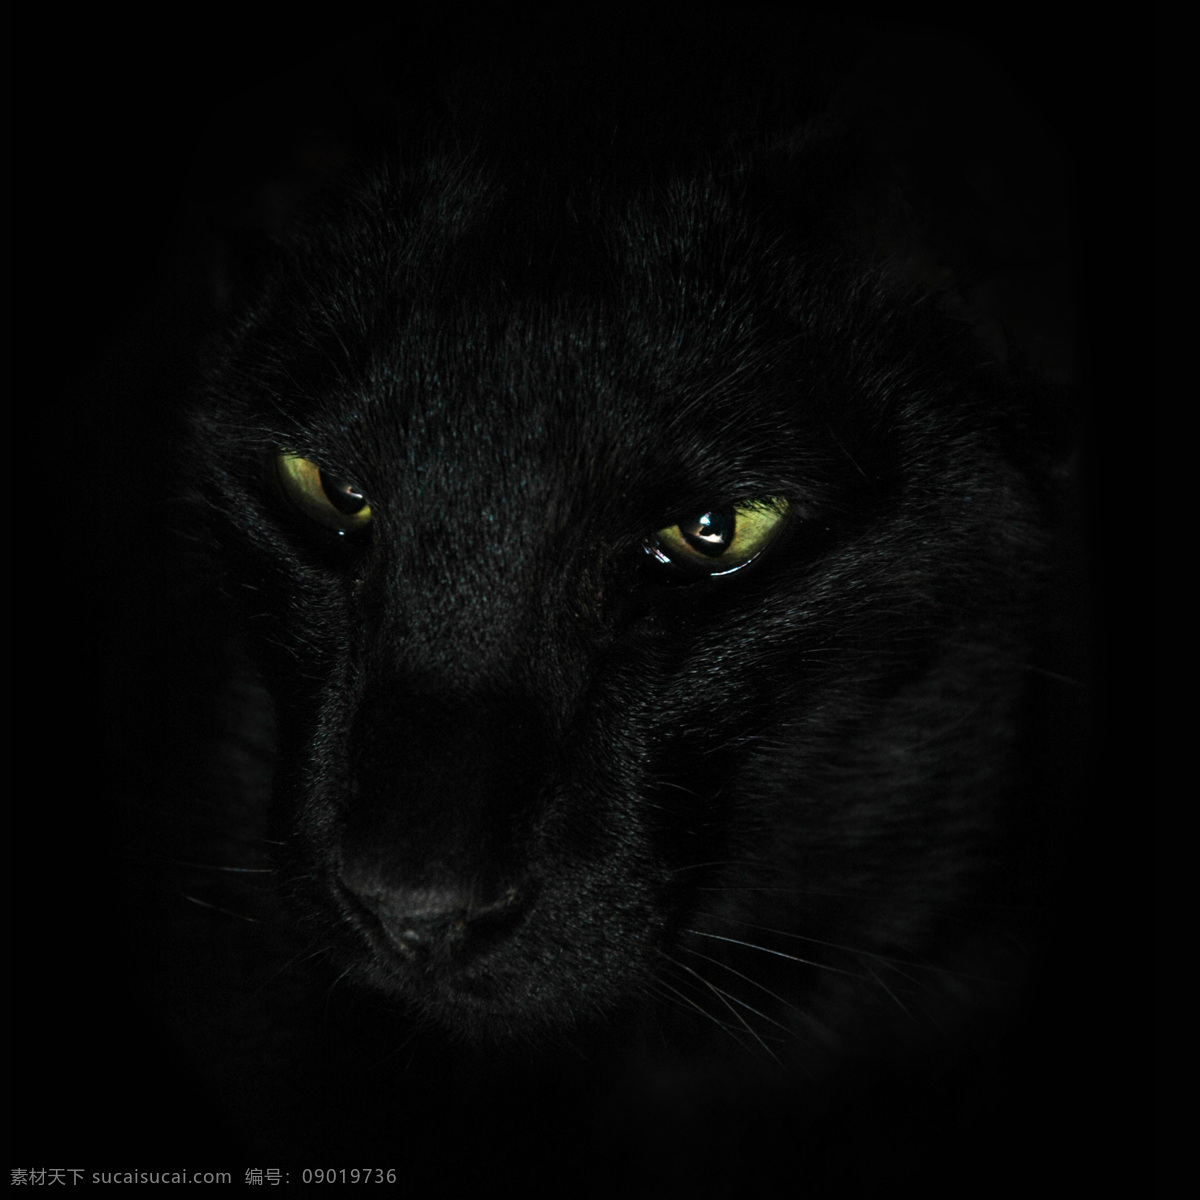 黑夜里的狼 狼 生物世界 动物世界 野生动物 陆地动物 动物 黑色